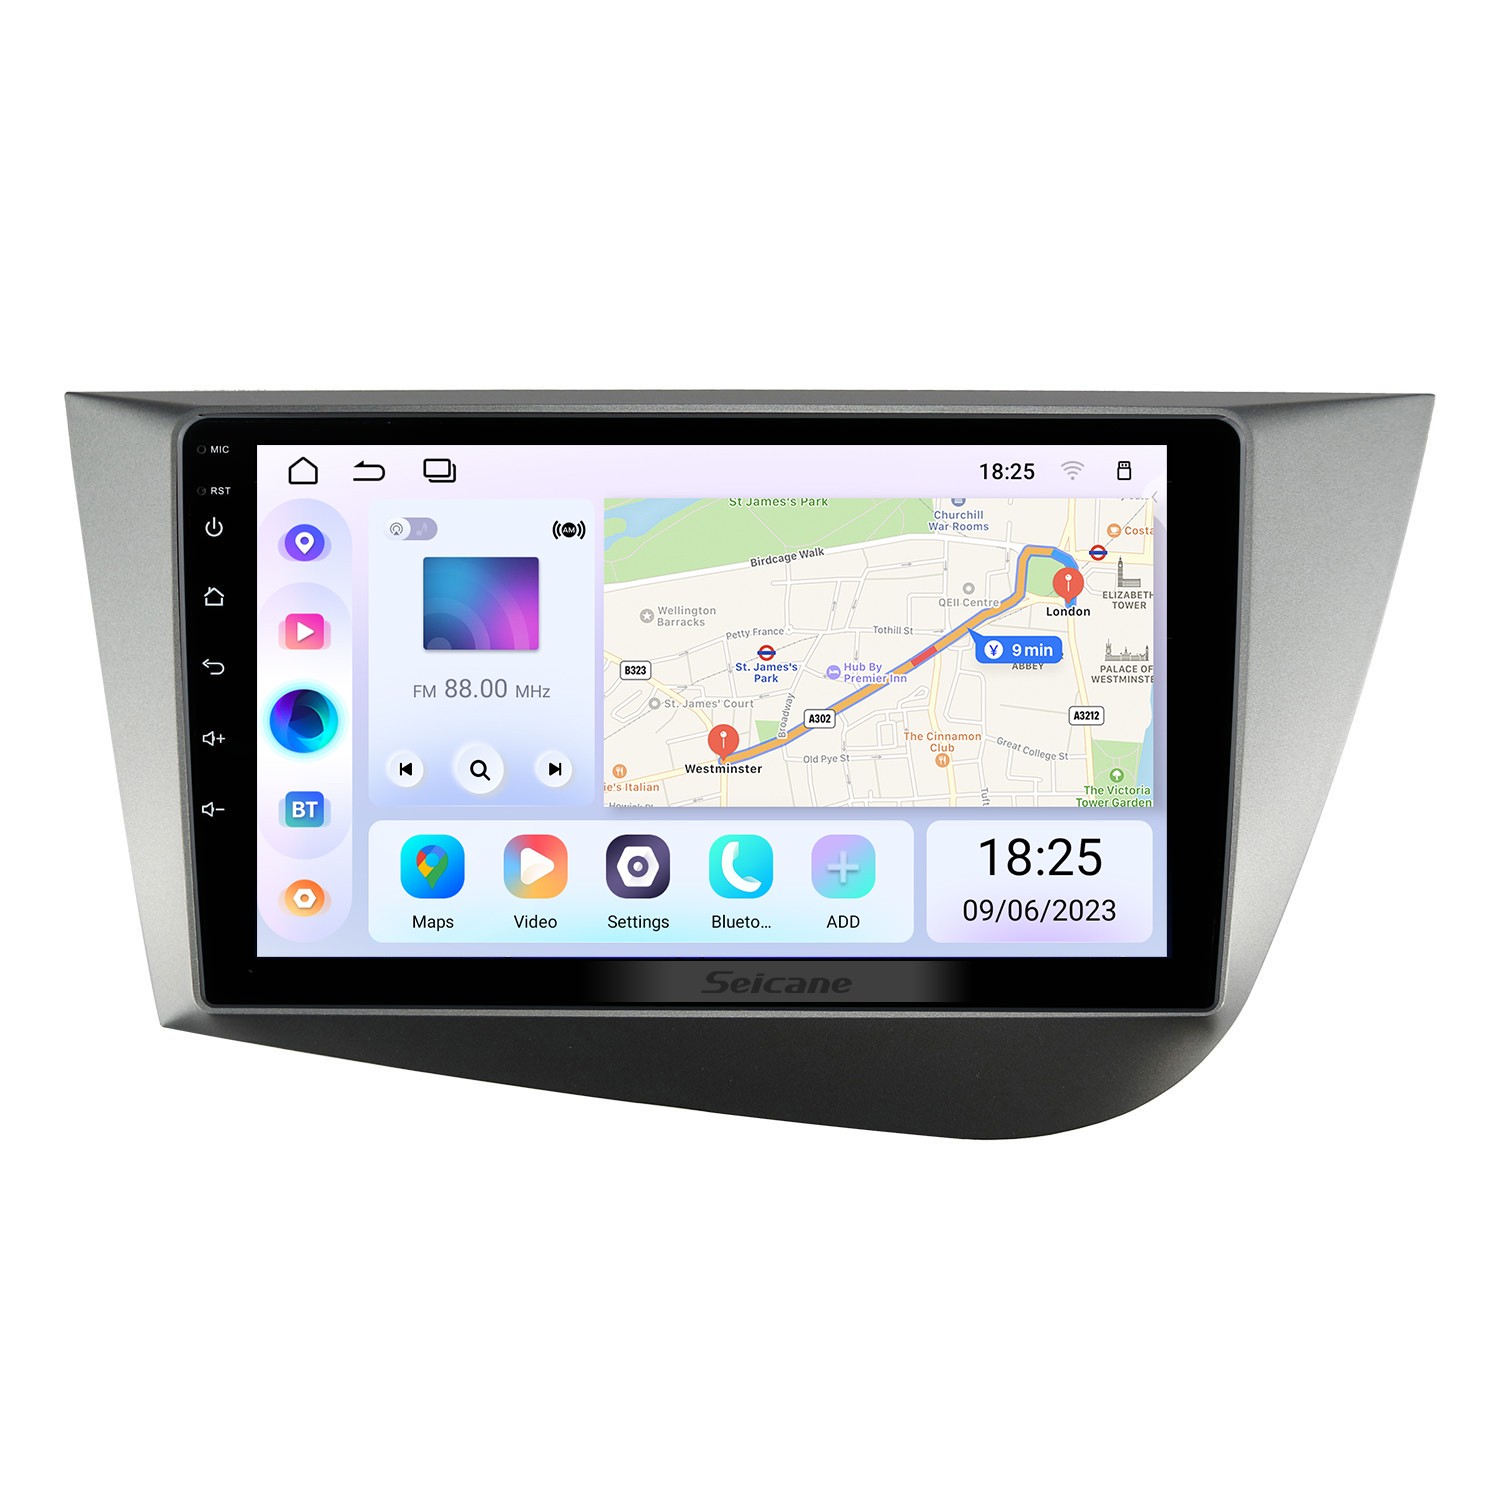 Navegador GPS OEM para coche Seat León MK2 con cámara de aparcamiento:  Android, USB, Bluethooth con control de mandos en volante